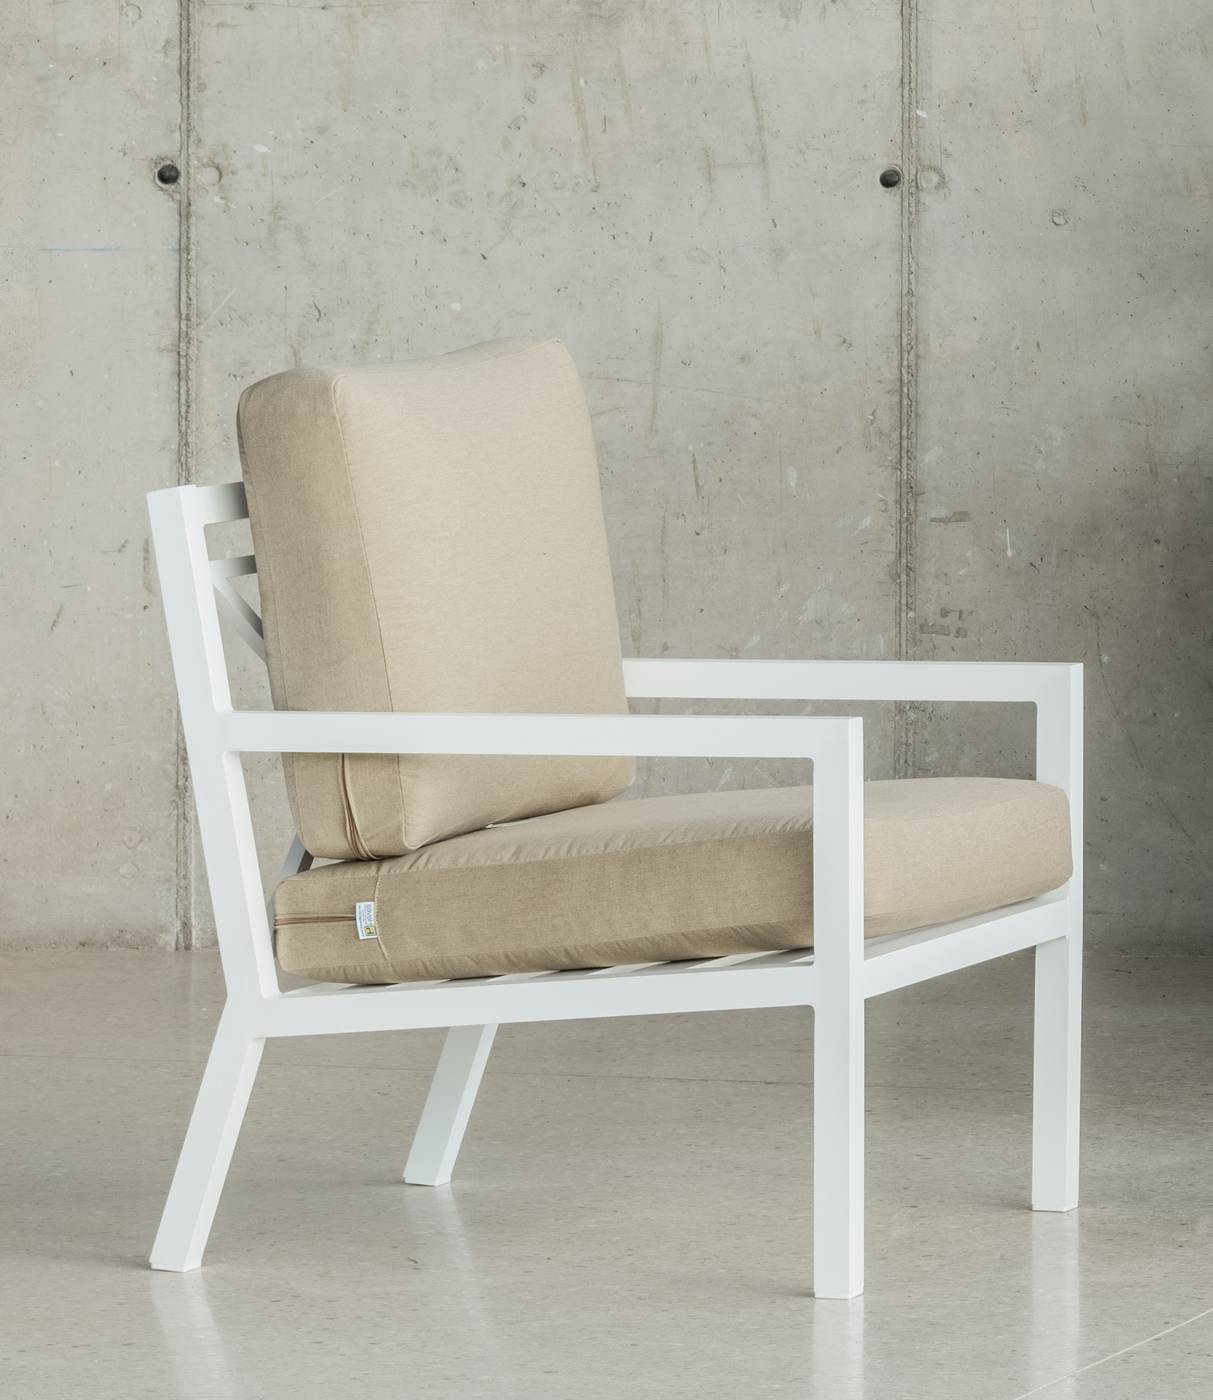 Set Aluminio Luxe Dounvil-7 - Conjunto de aluminio de lujo que incluye: un sofá dos plazas, dos sillones, una mesa de centro y cojines. Disponible en color blanco, antracita, champagne, plata o marrón